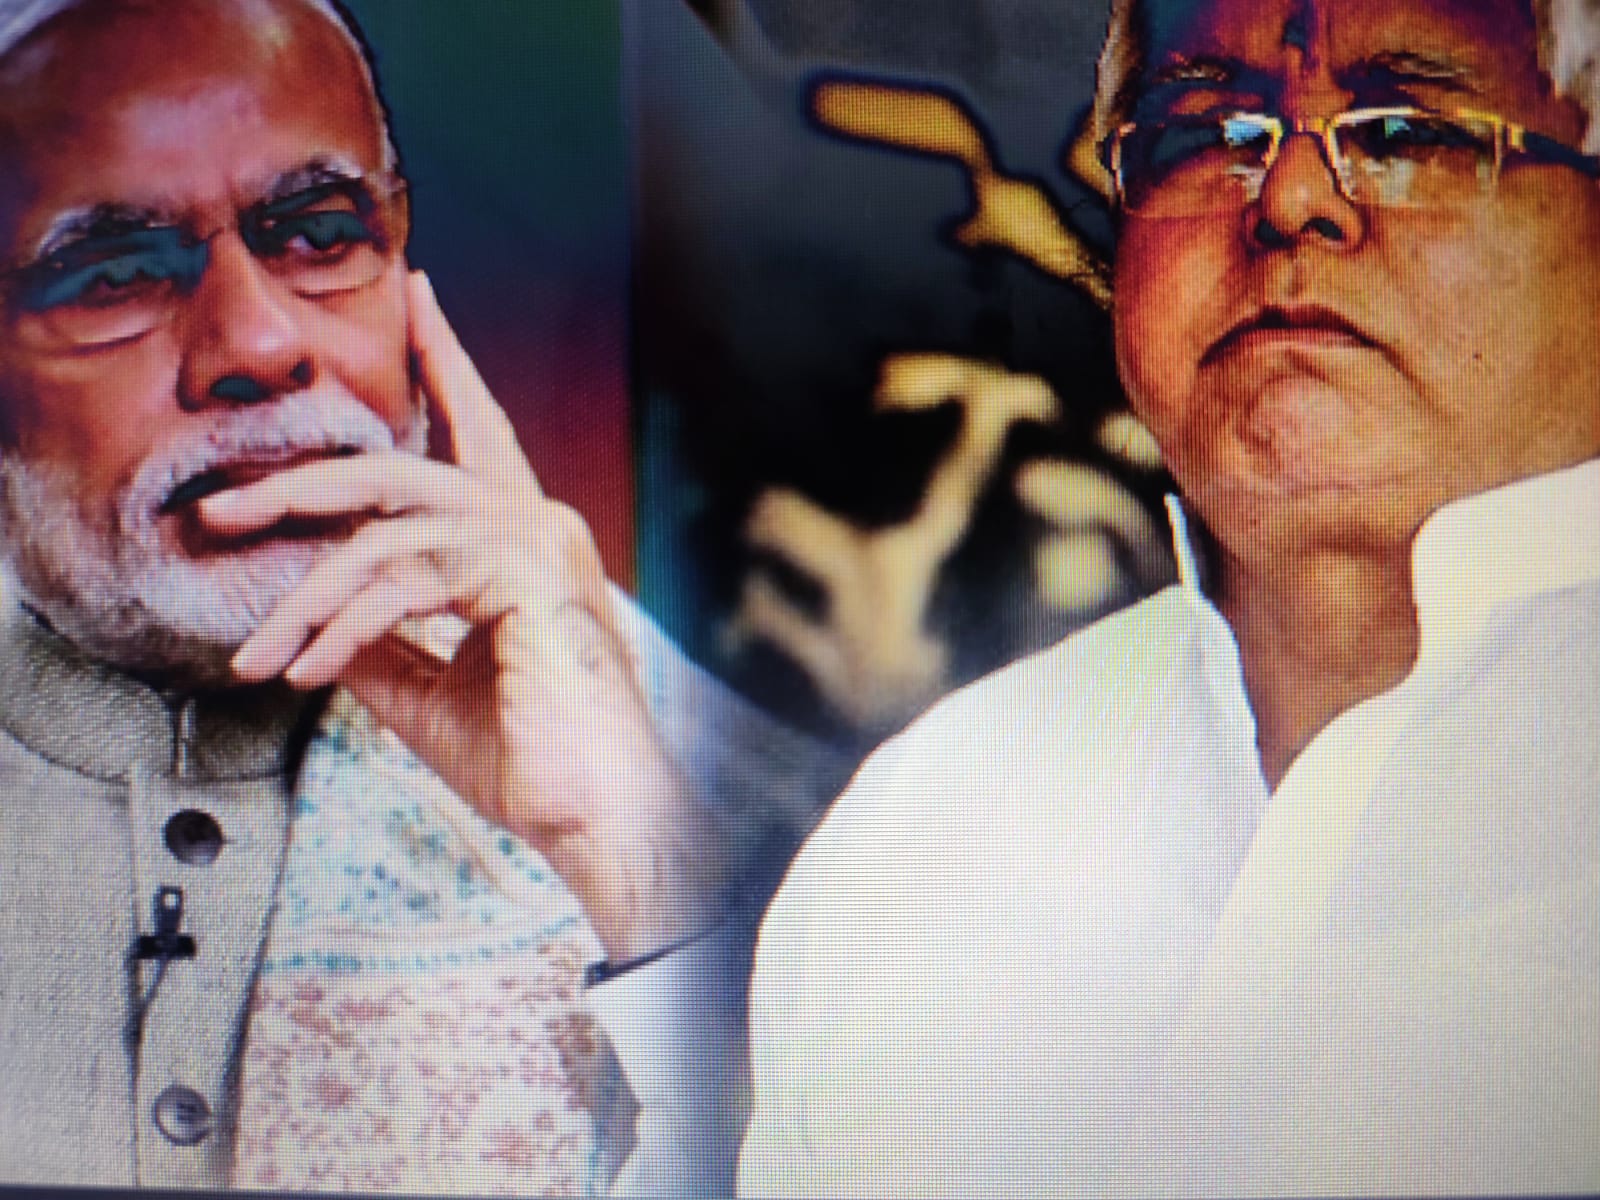 प्रधानमंत्री मोदी ने तेजस्वी को फोन करके लालू के स्वास्थ्य की जानकारी ली